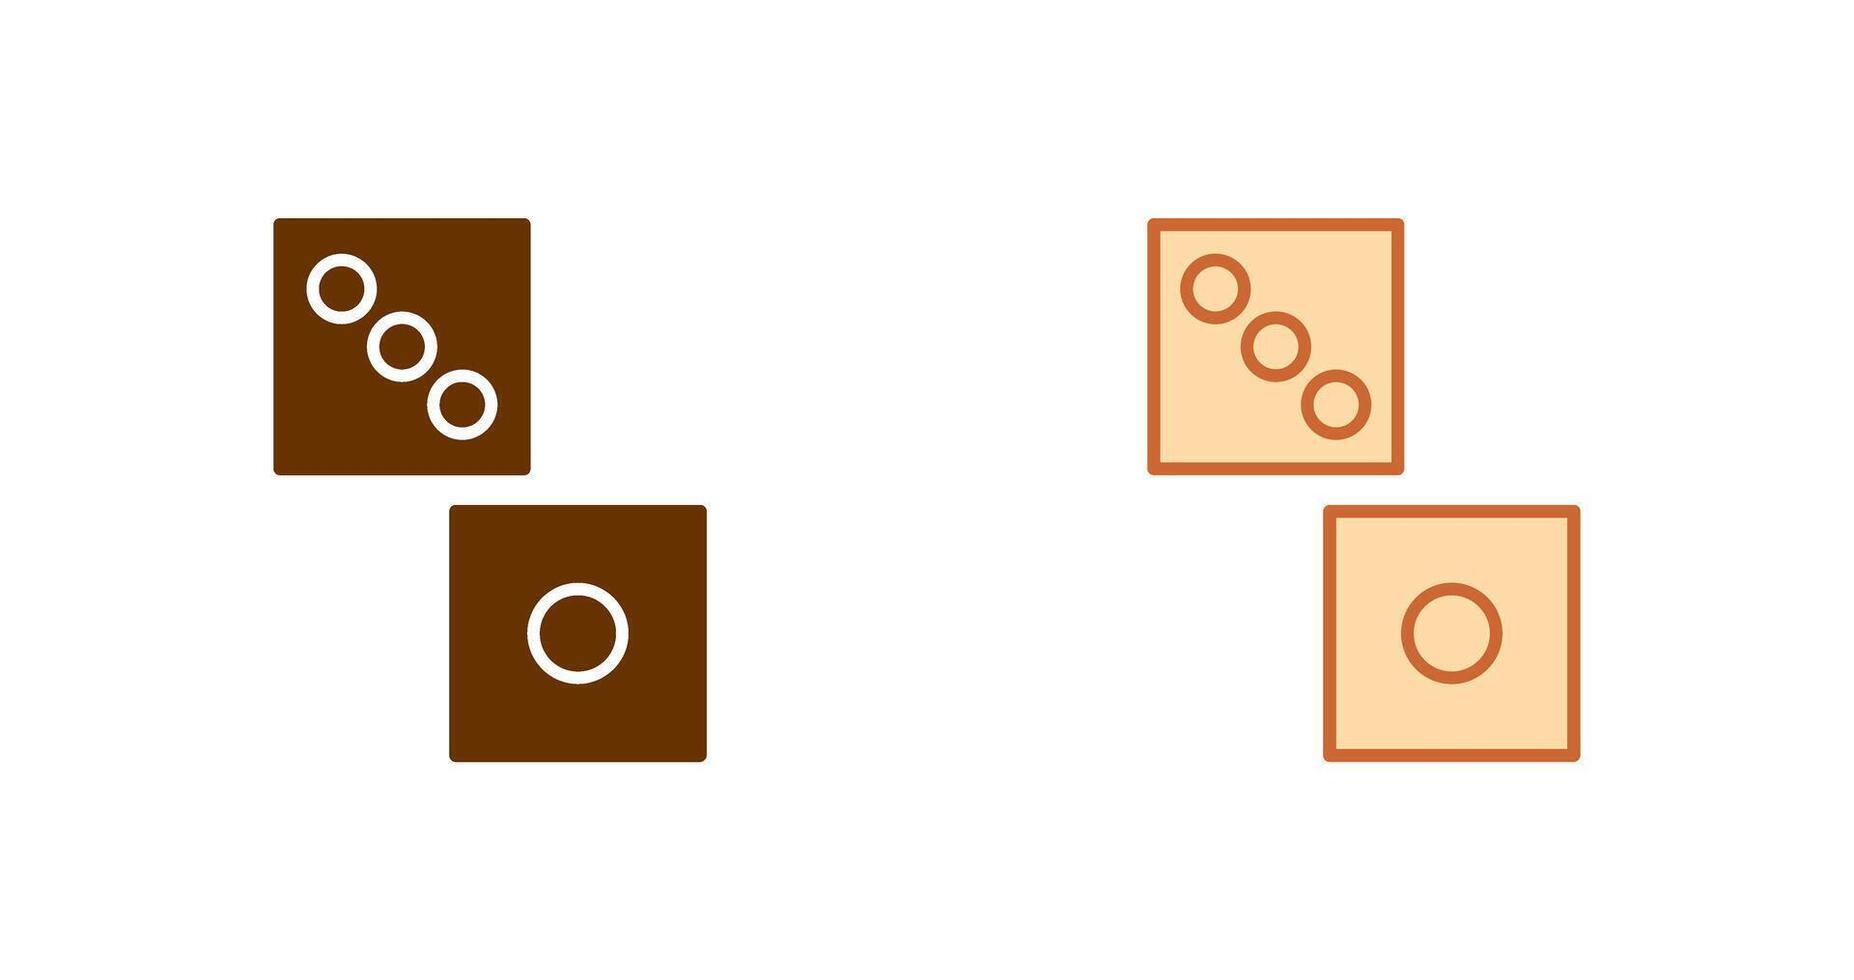 Domino Spiel Symbol Design vektor